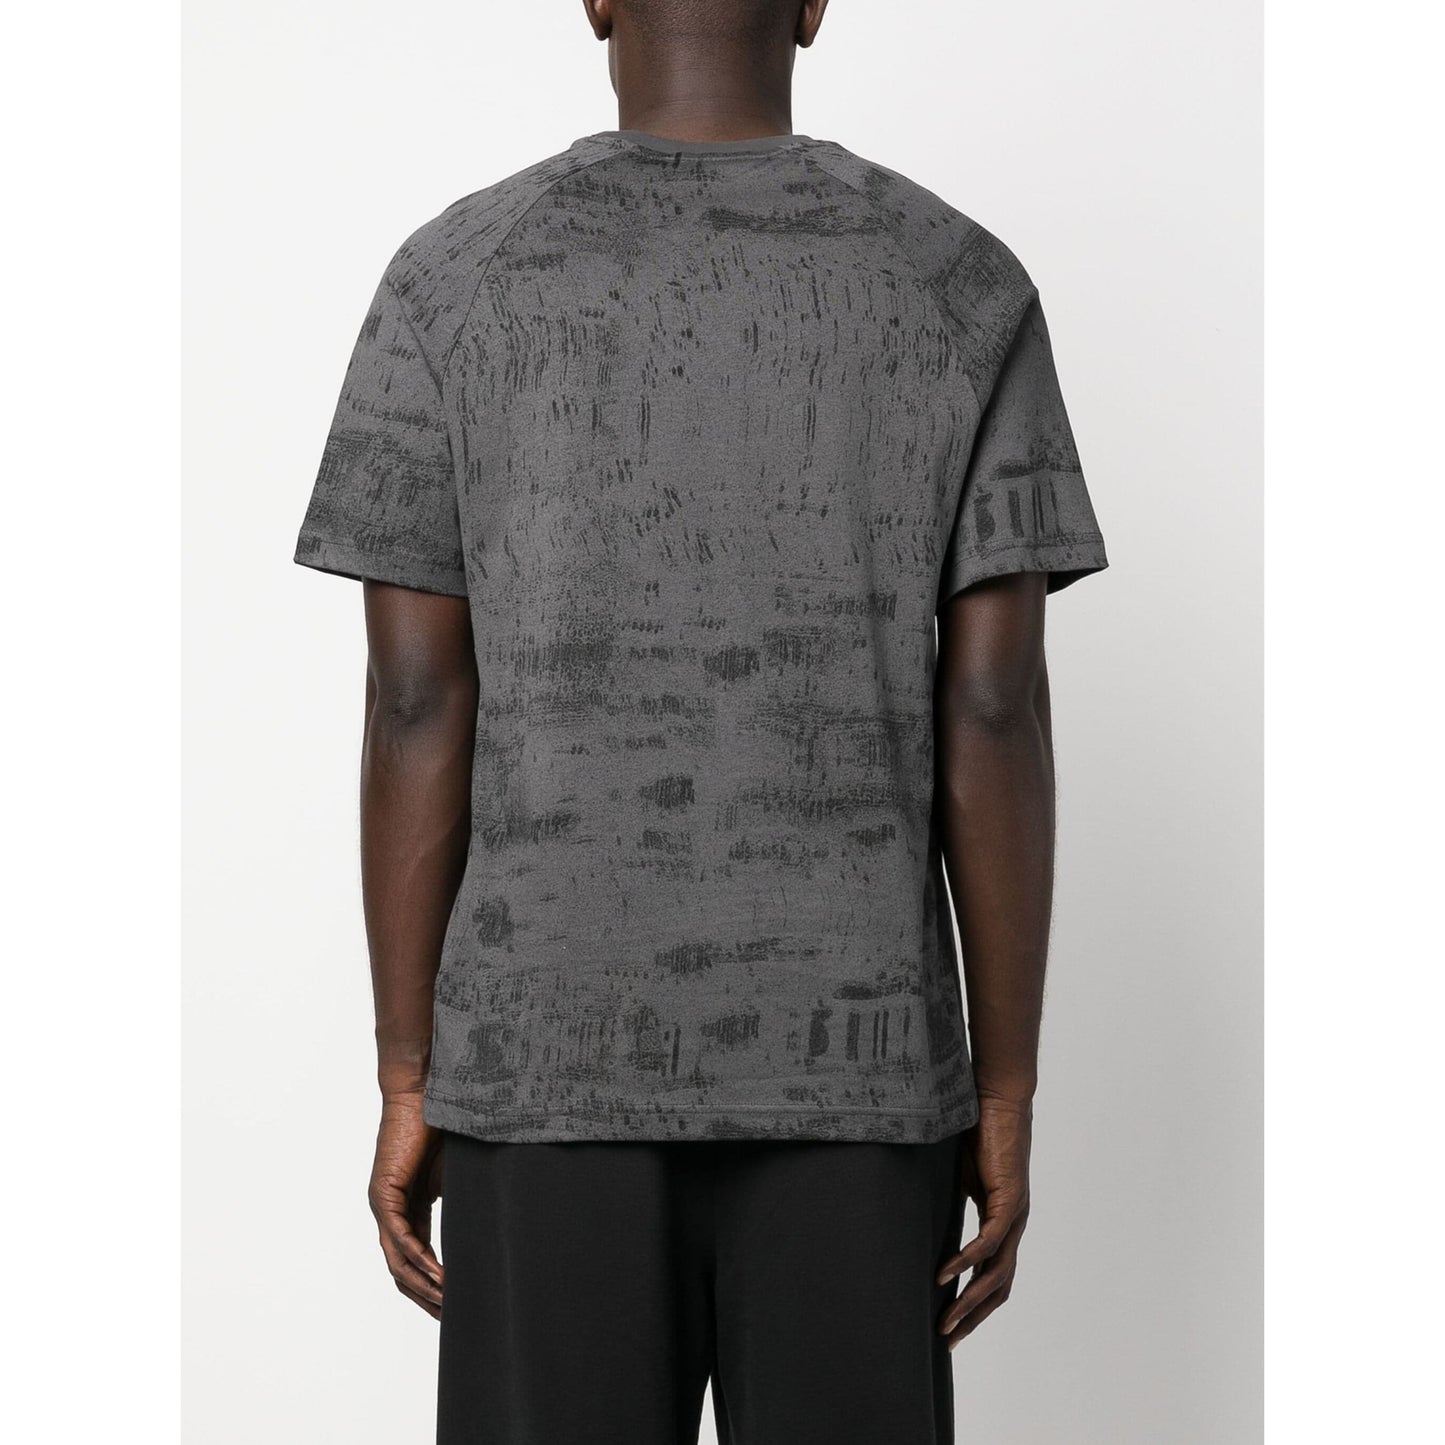 CALVIN KLEIN vyriški pilki marškinėliai Concrete aop t-shirt